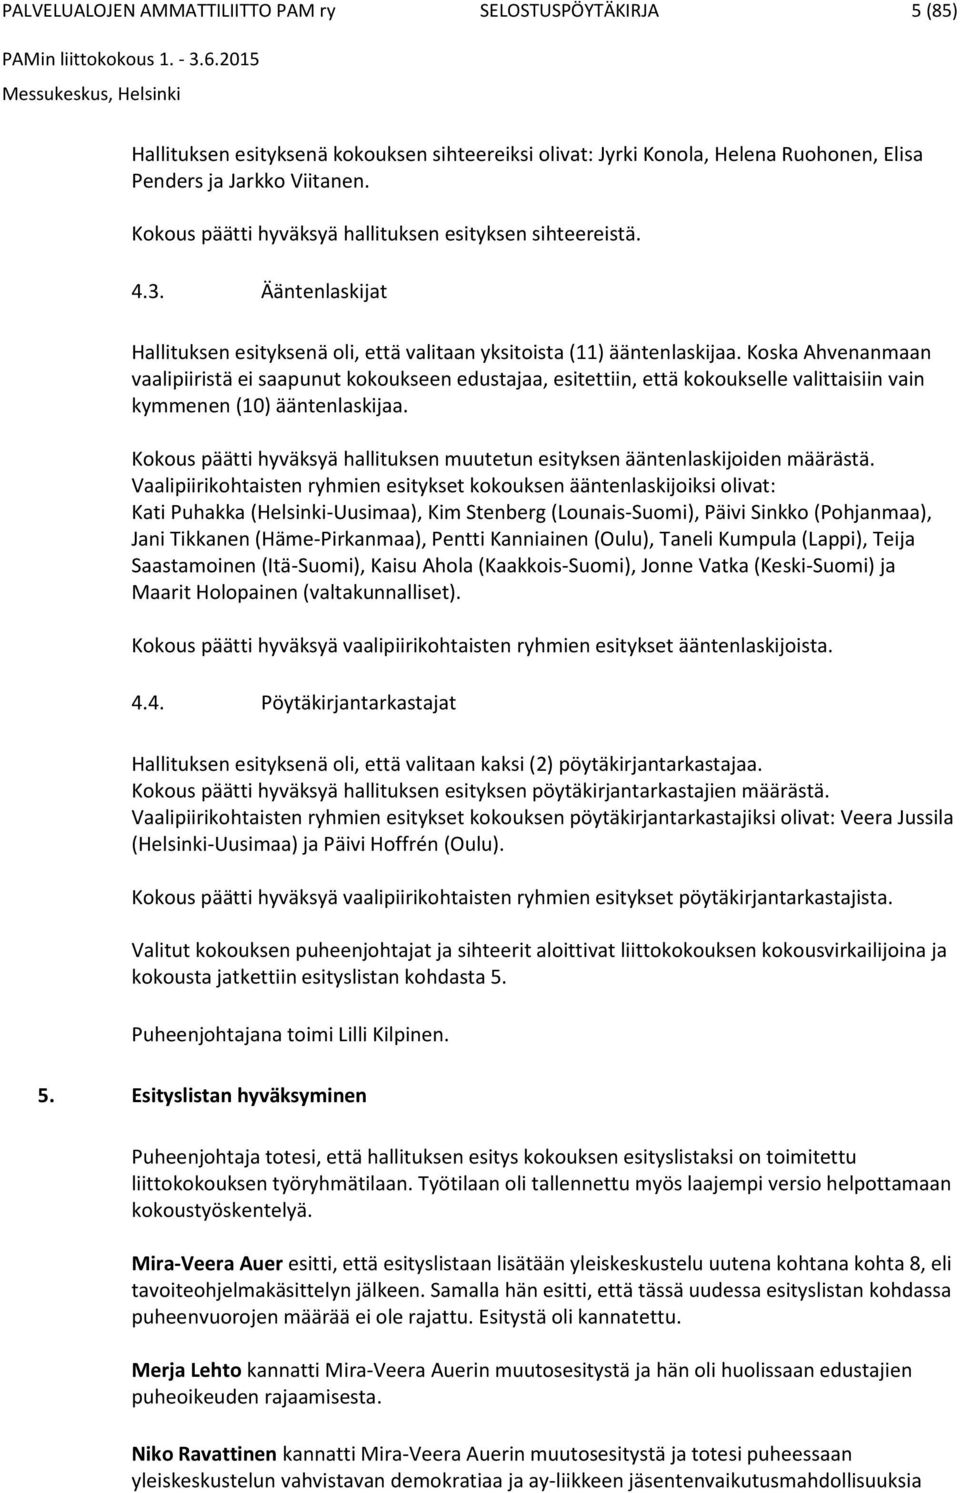 Koska Ahvenanmaan vaalipiiristä ei saapunut kokoukseen edustajaa, esitettiin, että kokoukselle valittaisiin vain kymmenen (10) ääntenlaskijaa.